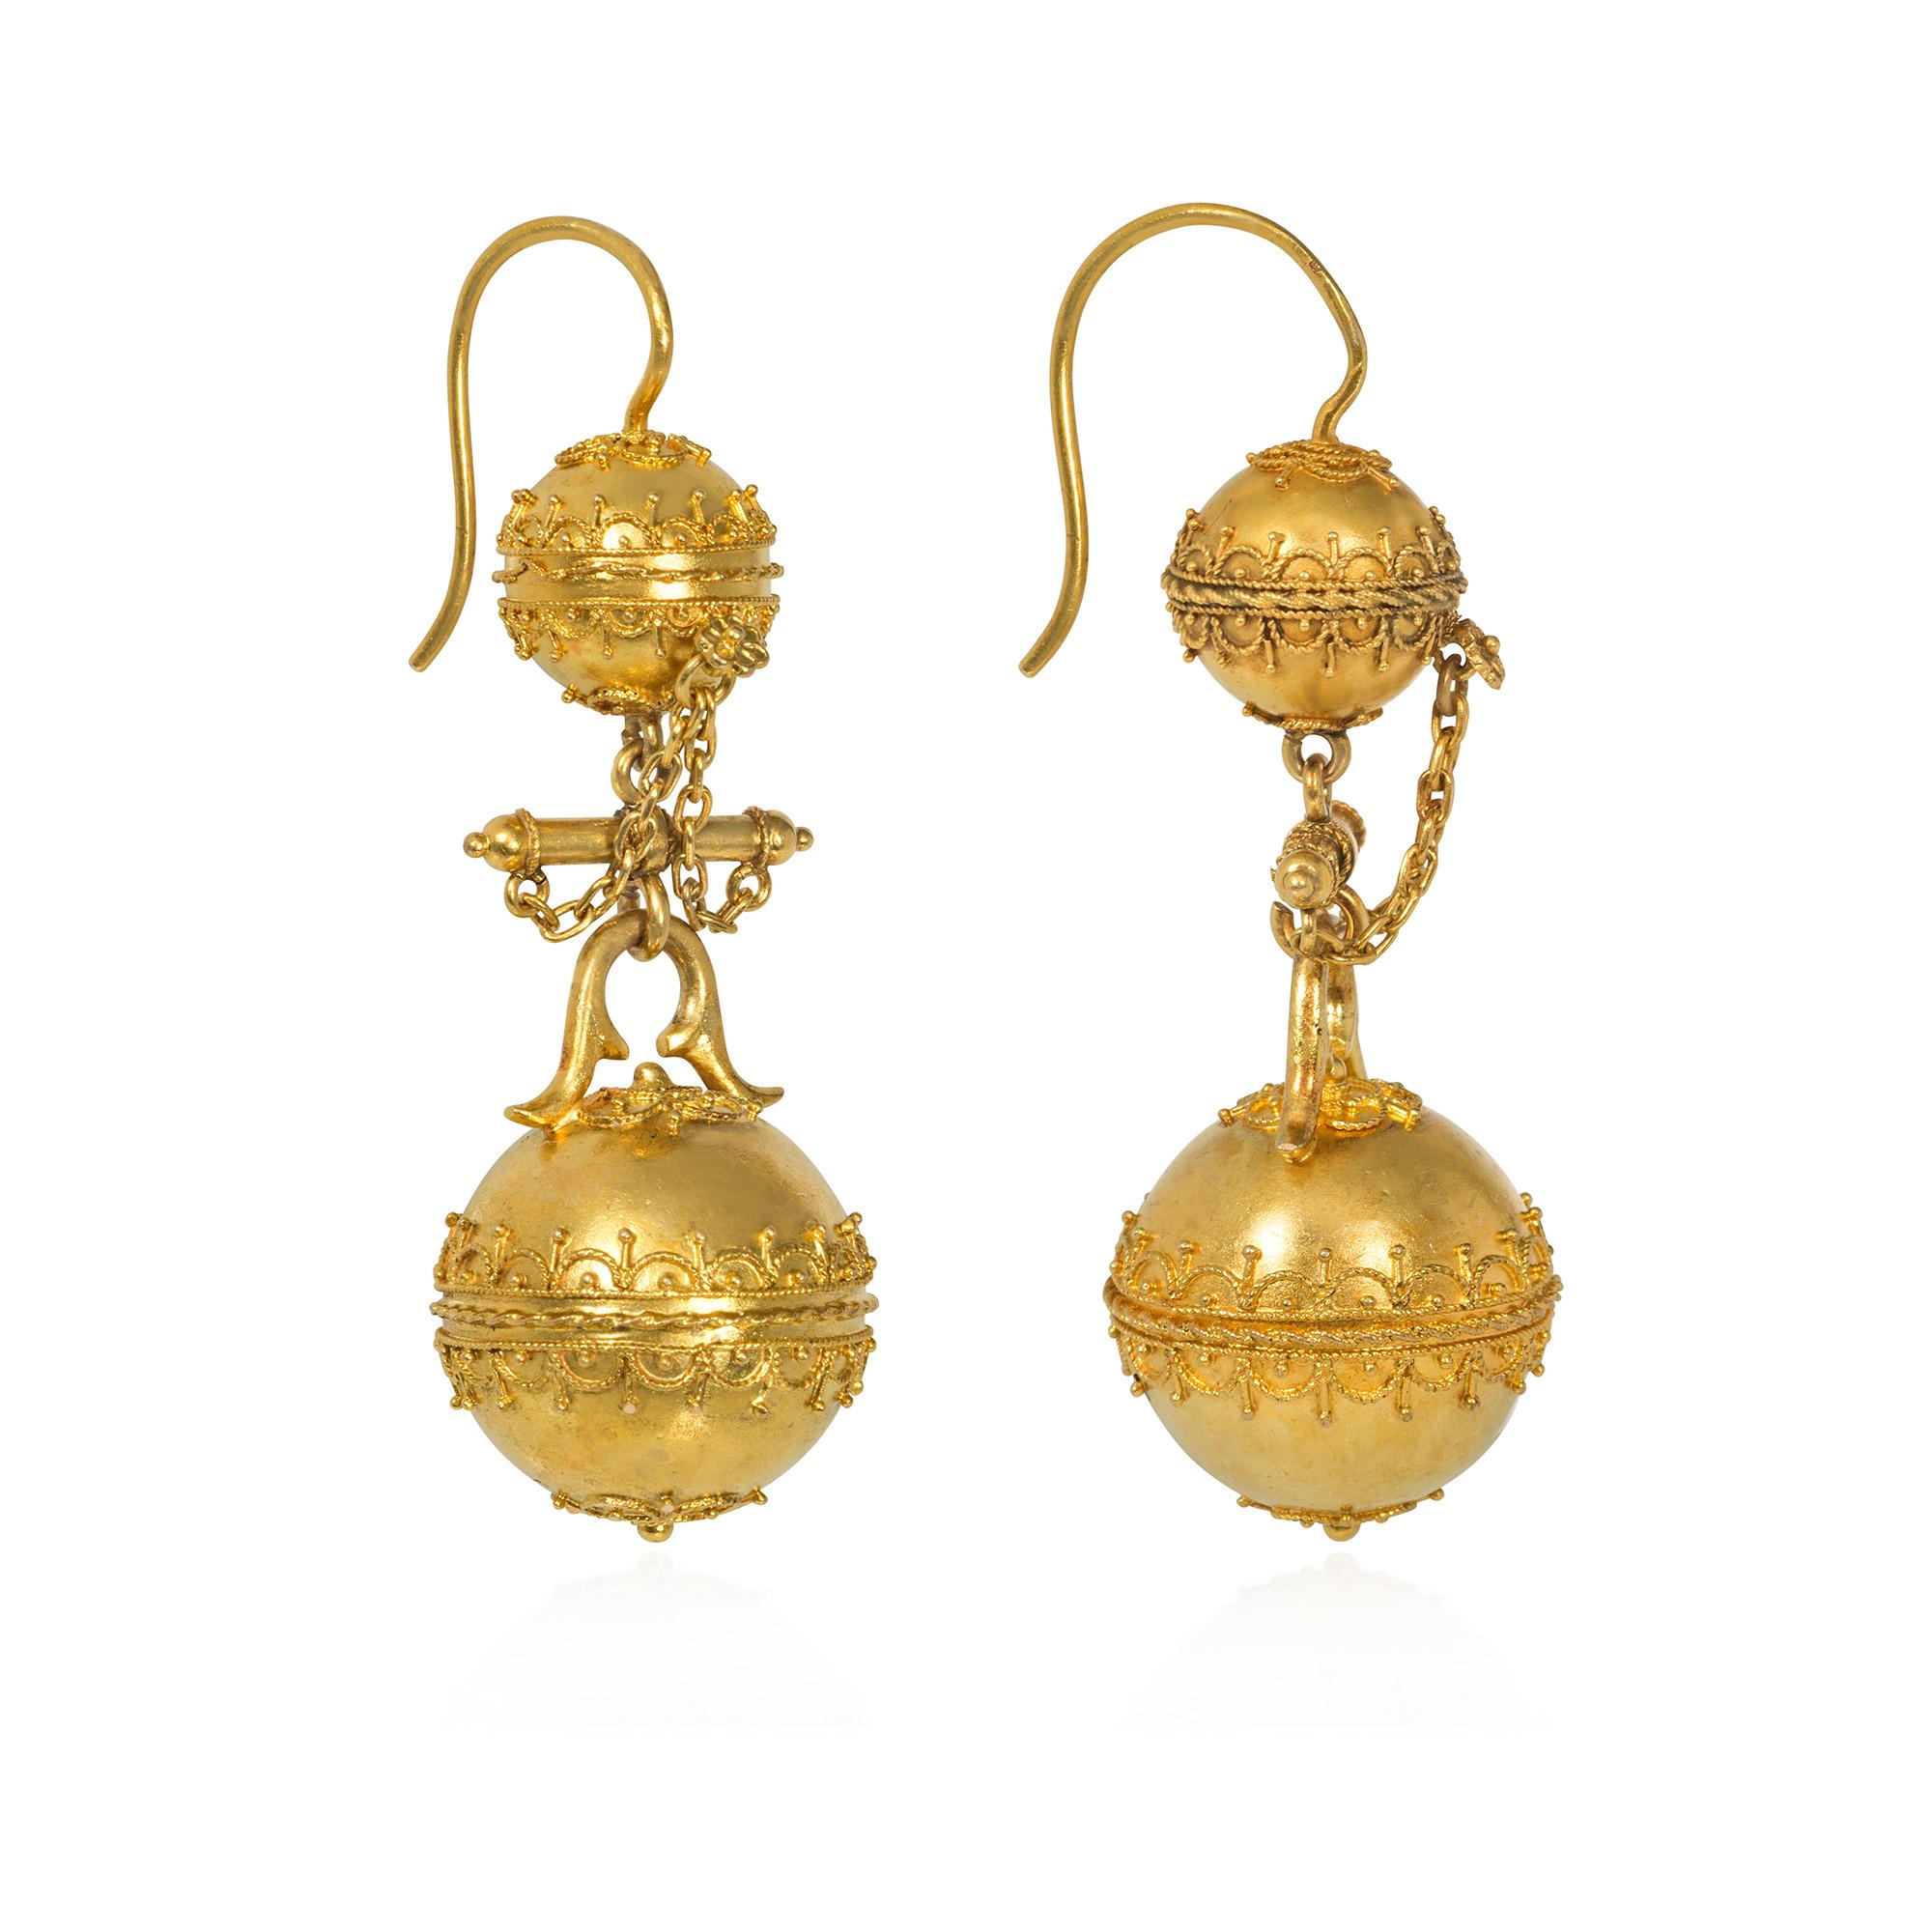 Ein Paar antiker viktorianischer Goldanhänger im Stil der etruskischen Wiedergeburt, bestehend aus Goldperlen mit aufgesetztem Drahtgeflecht und Granulierung, die an ähnlichen Perlenfassungen mit einem Stababstandhalter und einer Kettenverzierung